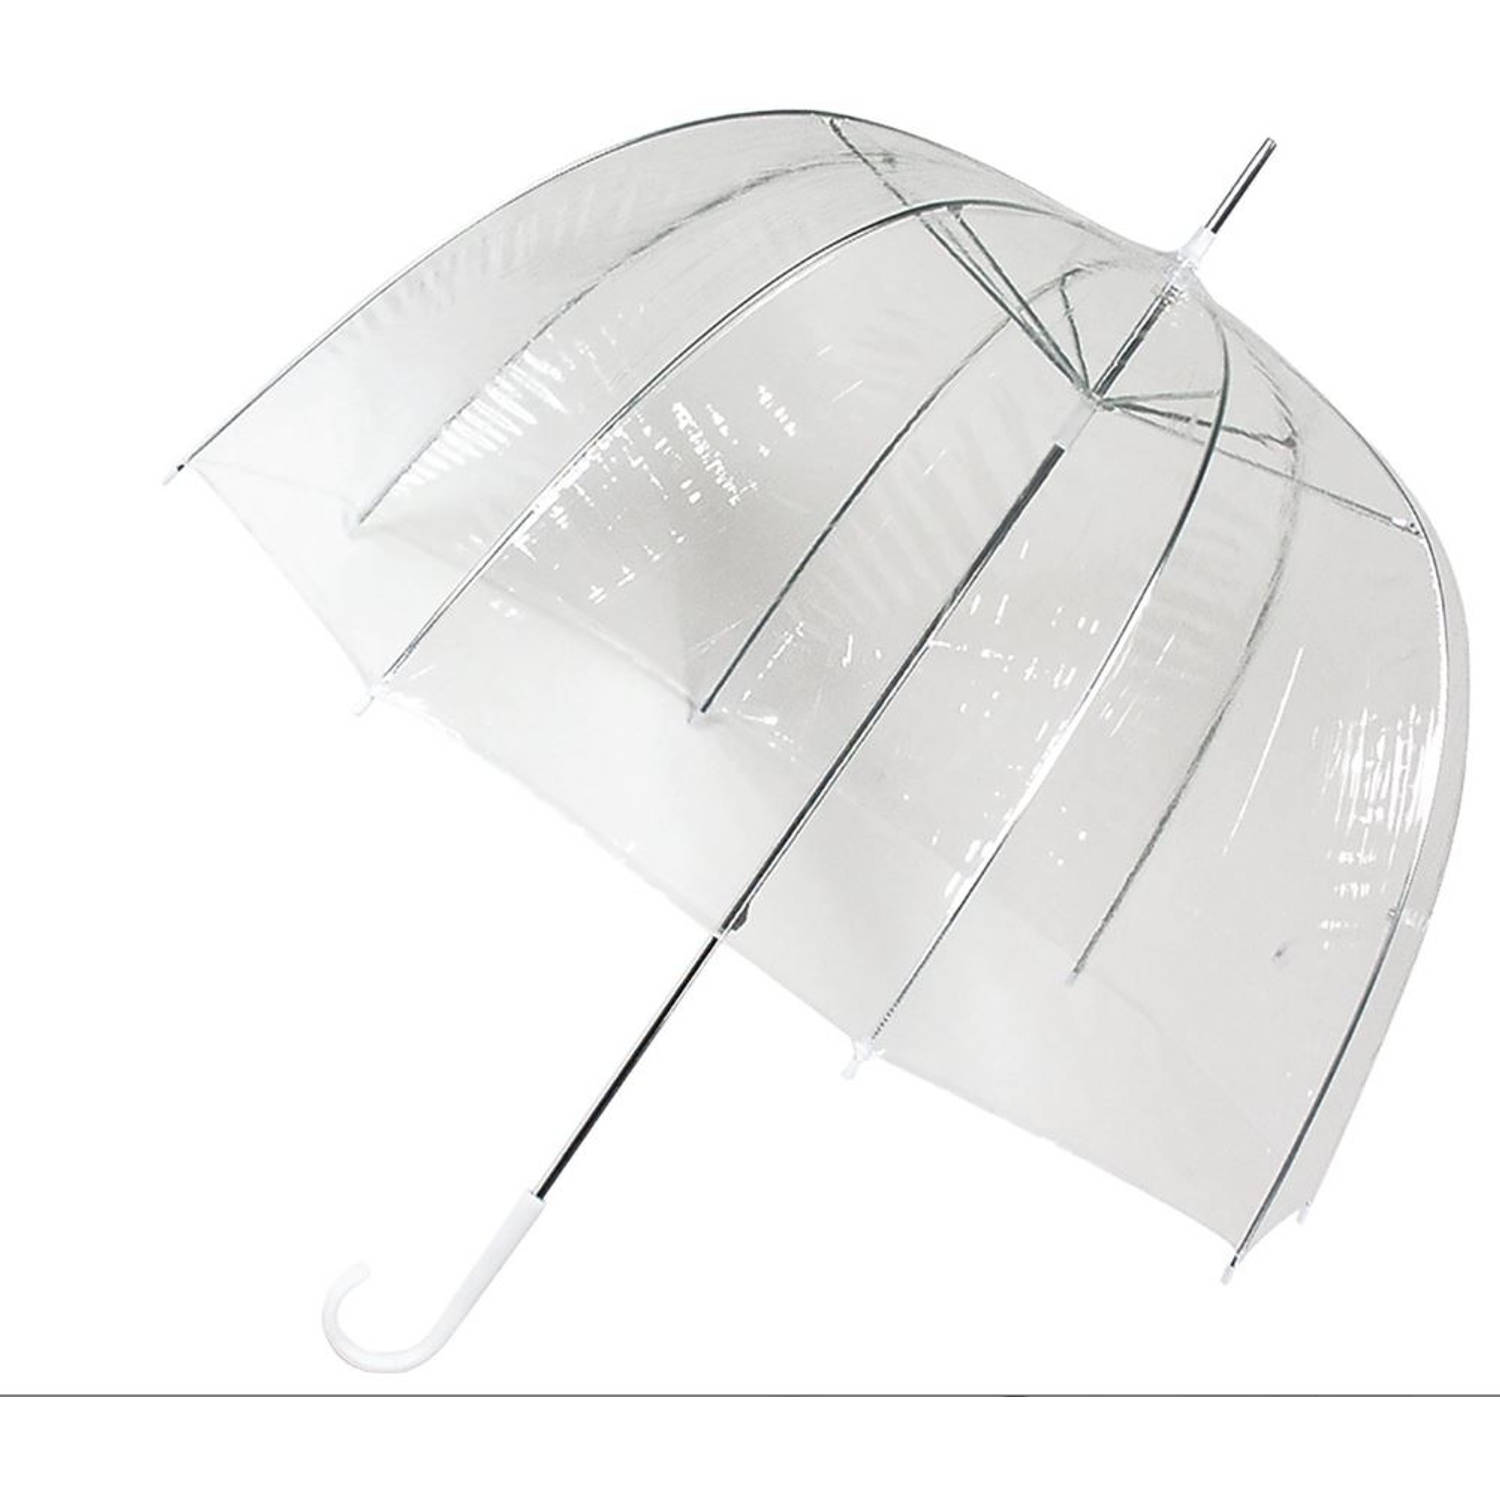 Transparant plastic paraplu's 80 cm - doorzichtige paraplu - trouwparaplu - bruidsparaplu - stijlvol - bruiloft -